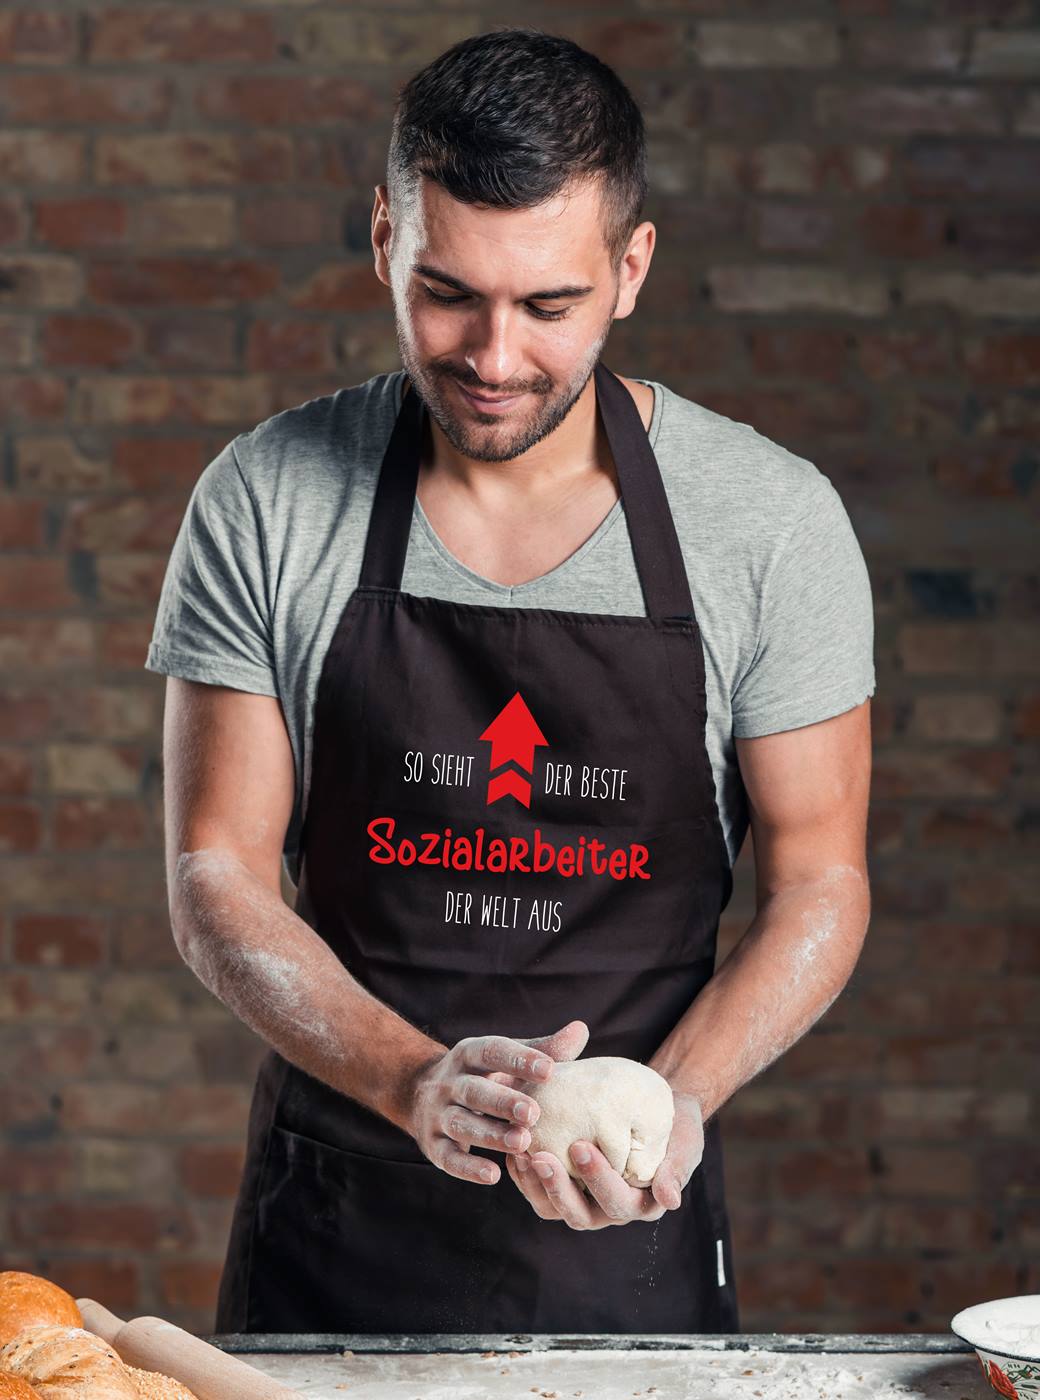 Bild: Kochschürze - So sieht der beste Sozialarbeiter der Welt aus Geschenkidee